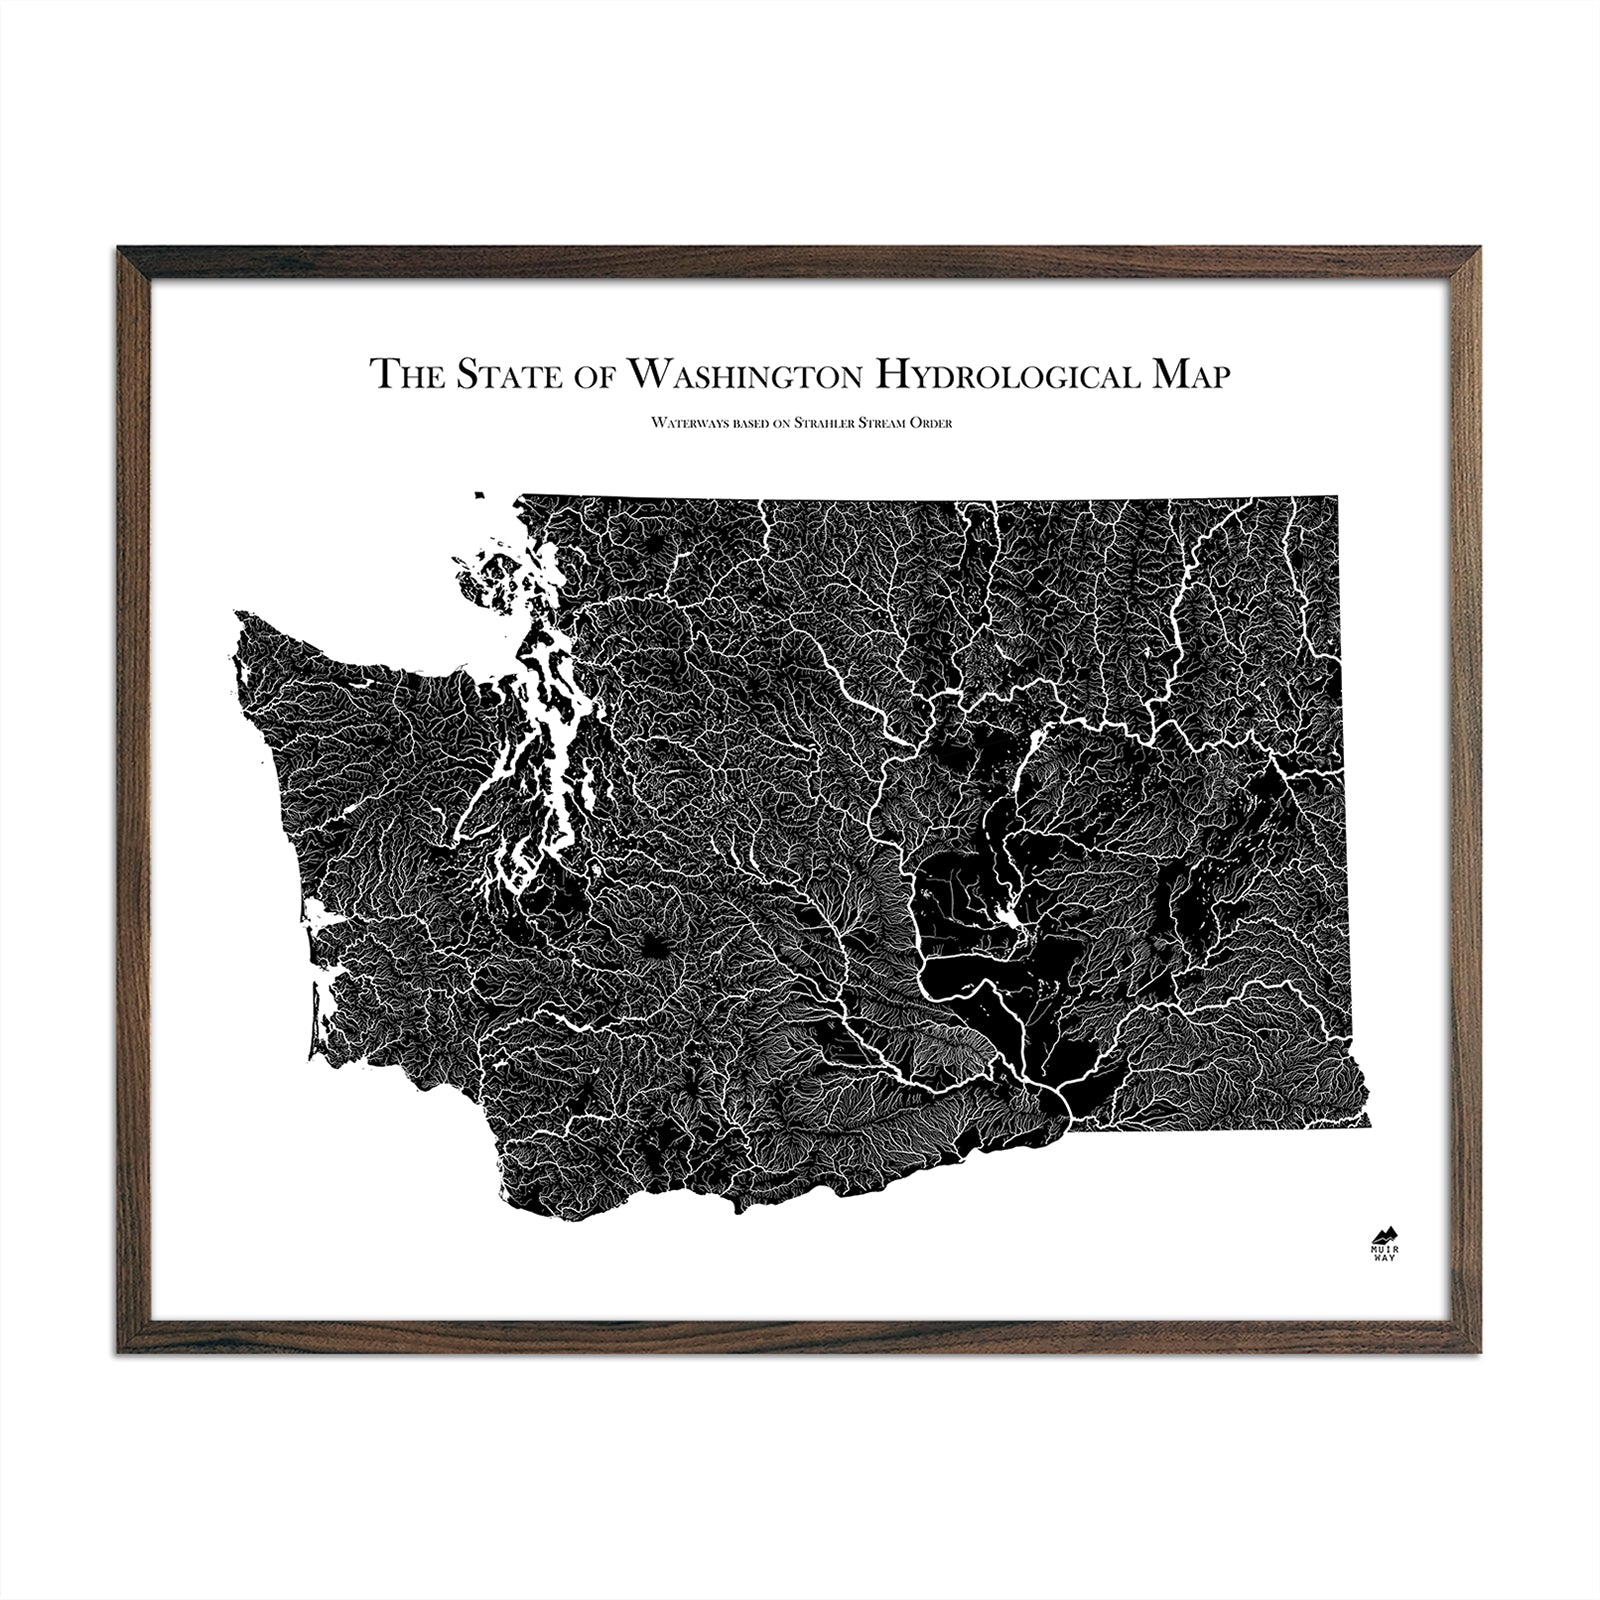 Washington Hydrological Map